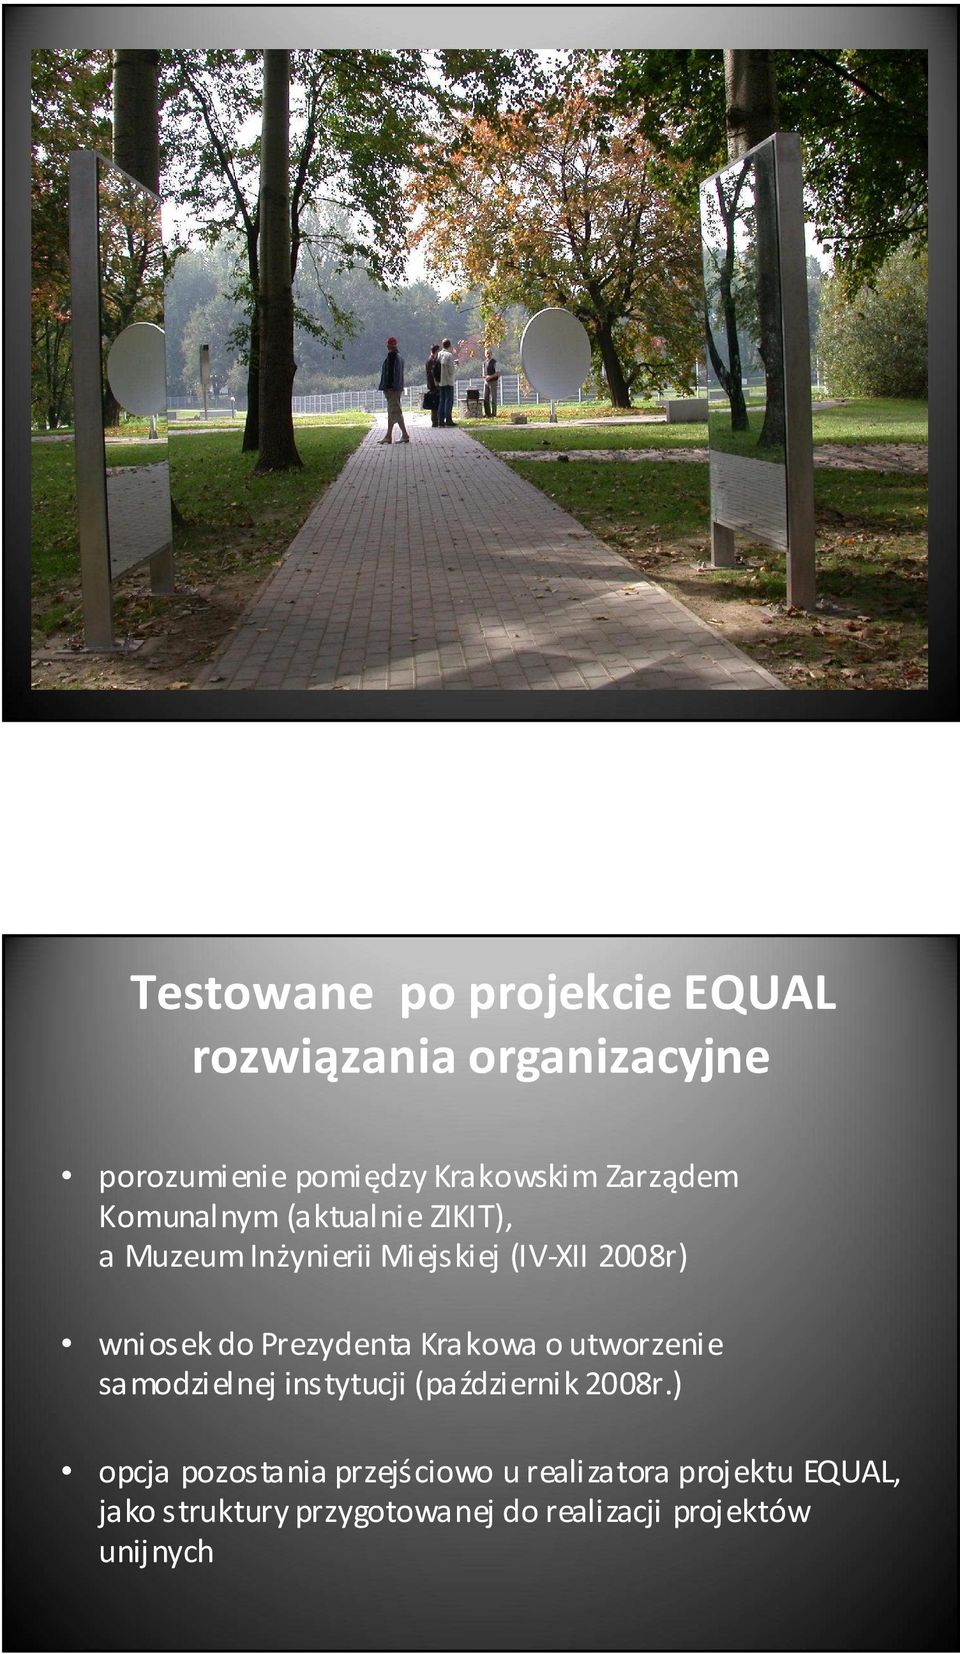 Prezydenta Krakowa o utworzenie samodzielnej instytucji (październik 2008r.